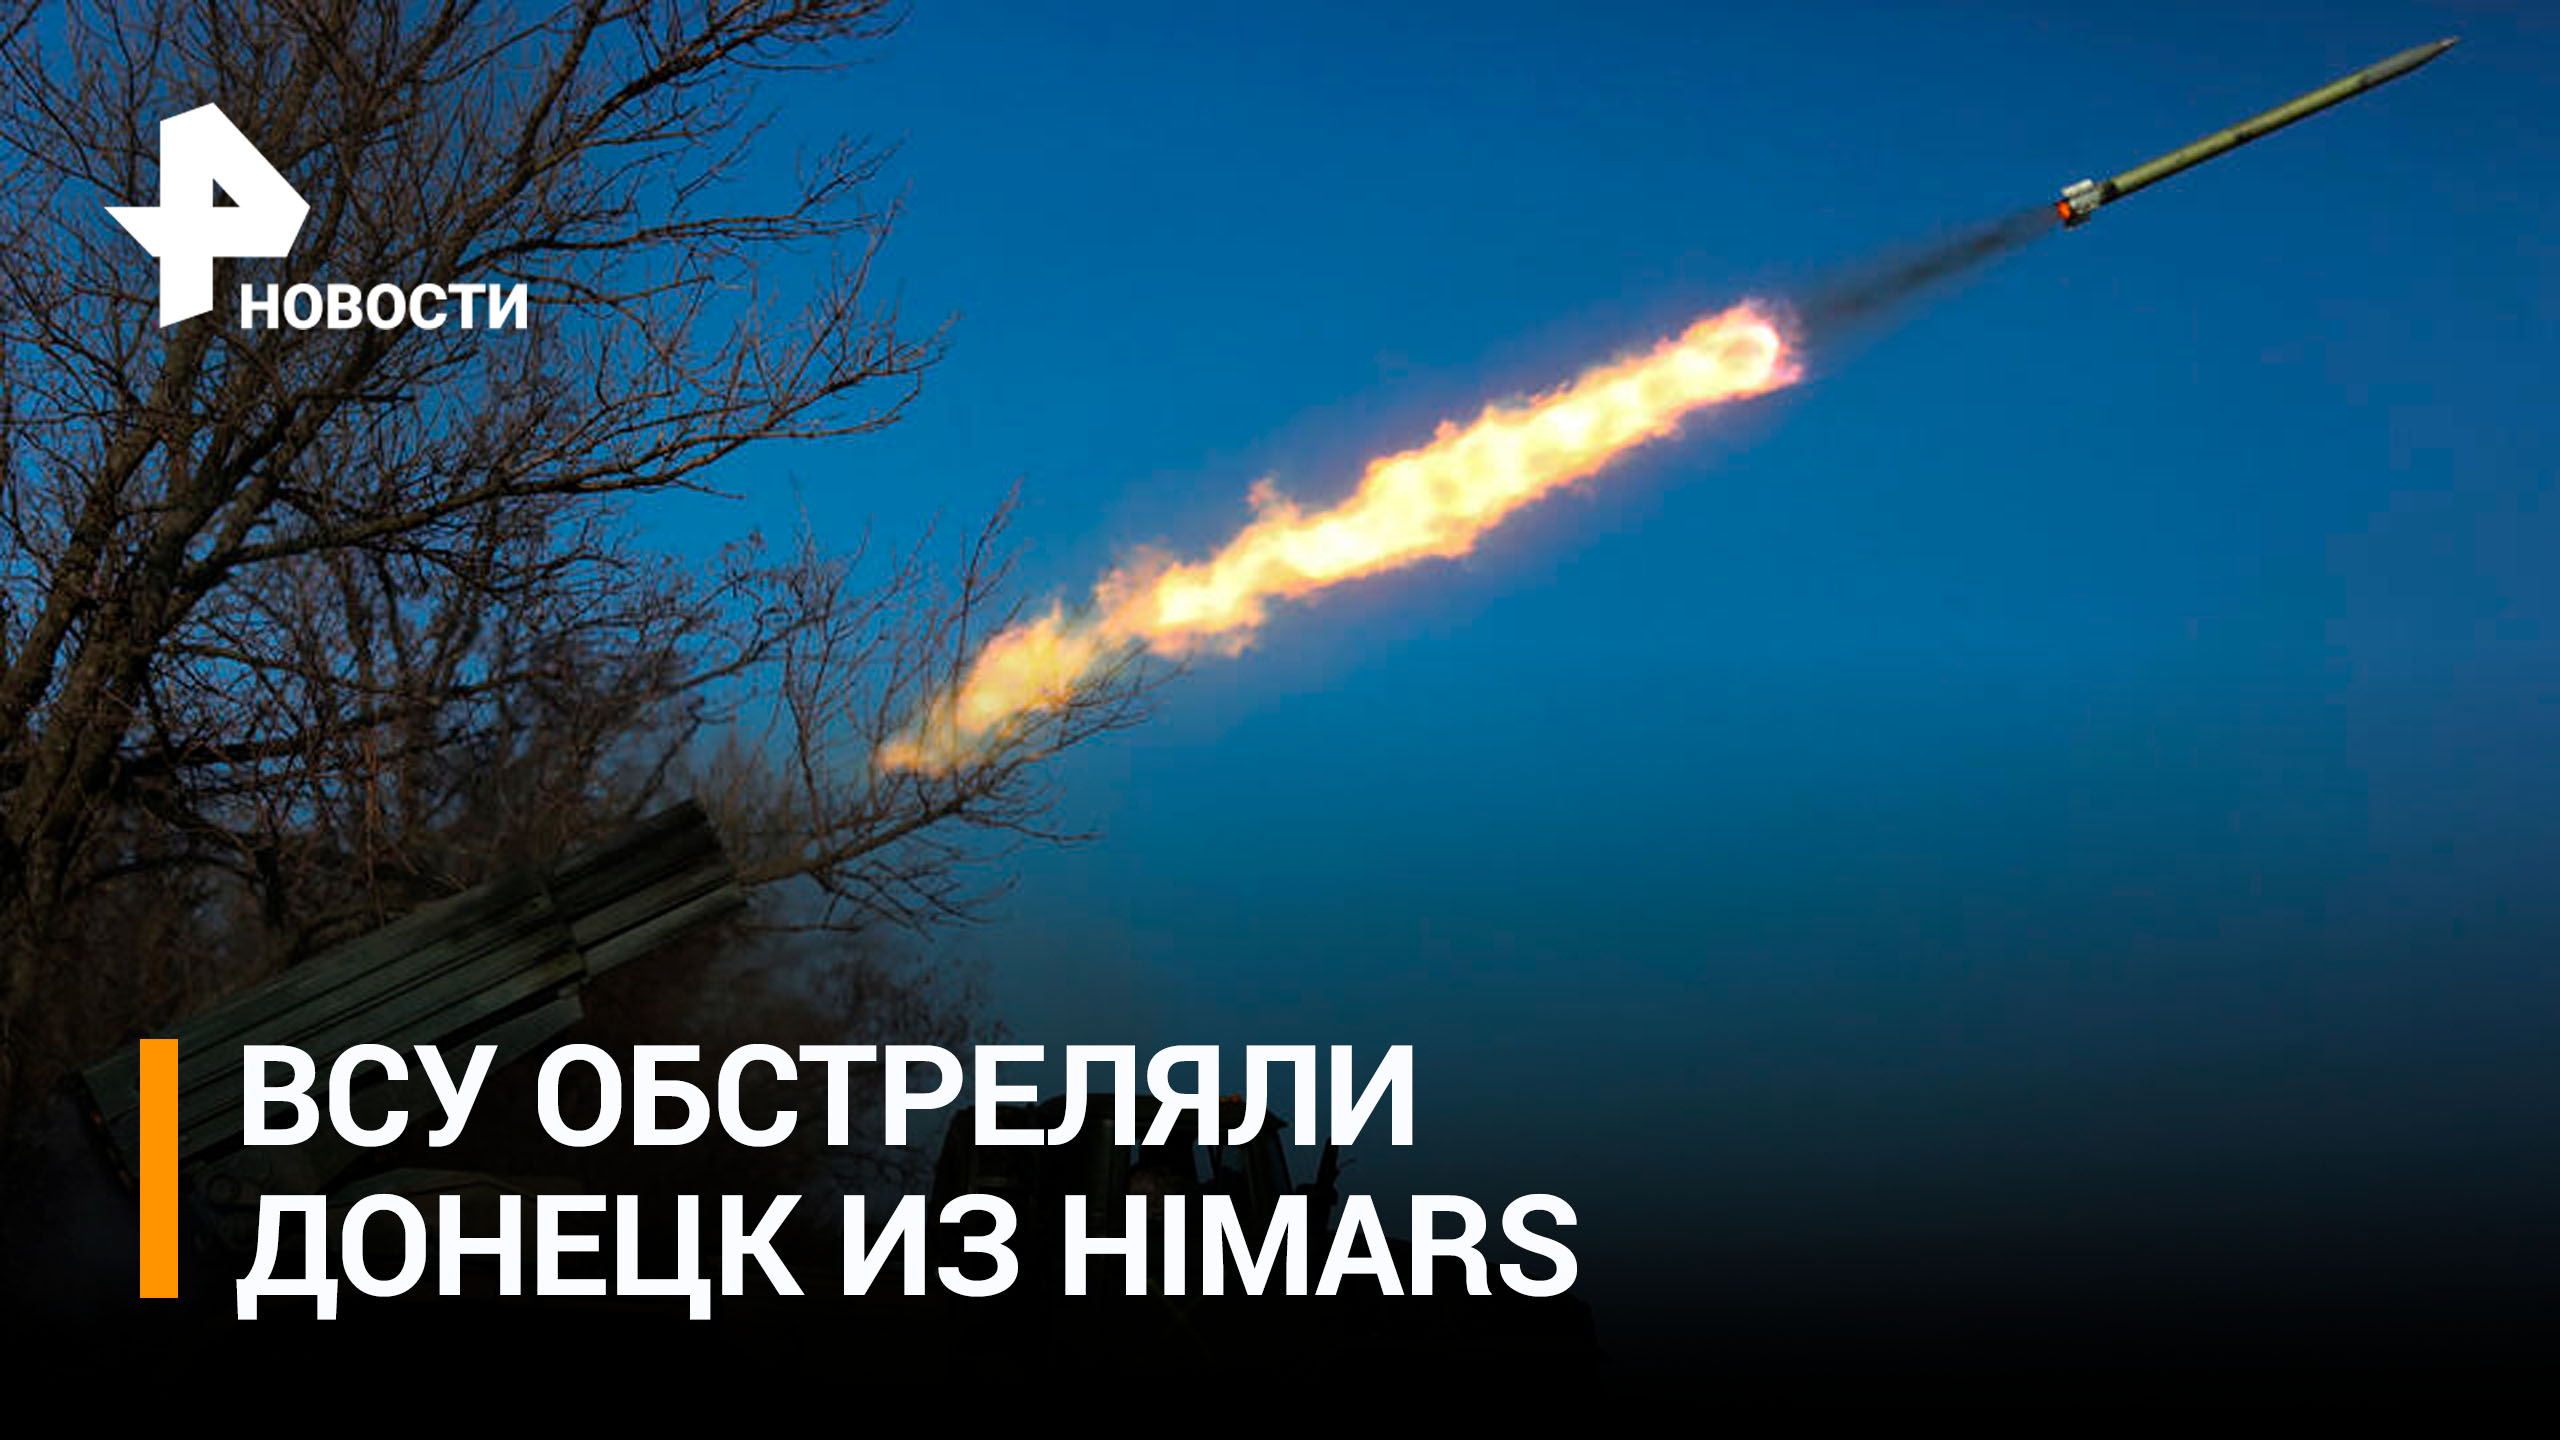 ВСУ в праздник обстреляли Донецк из HIMARS есть погибшие и раненые / РЕН Новости